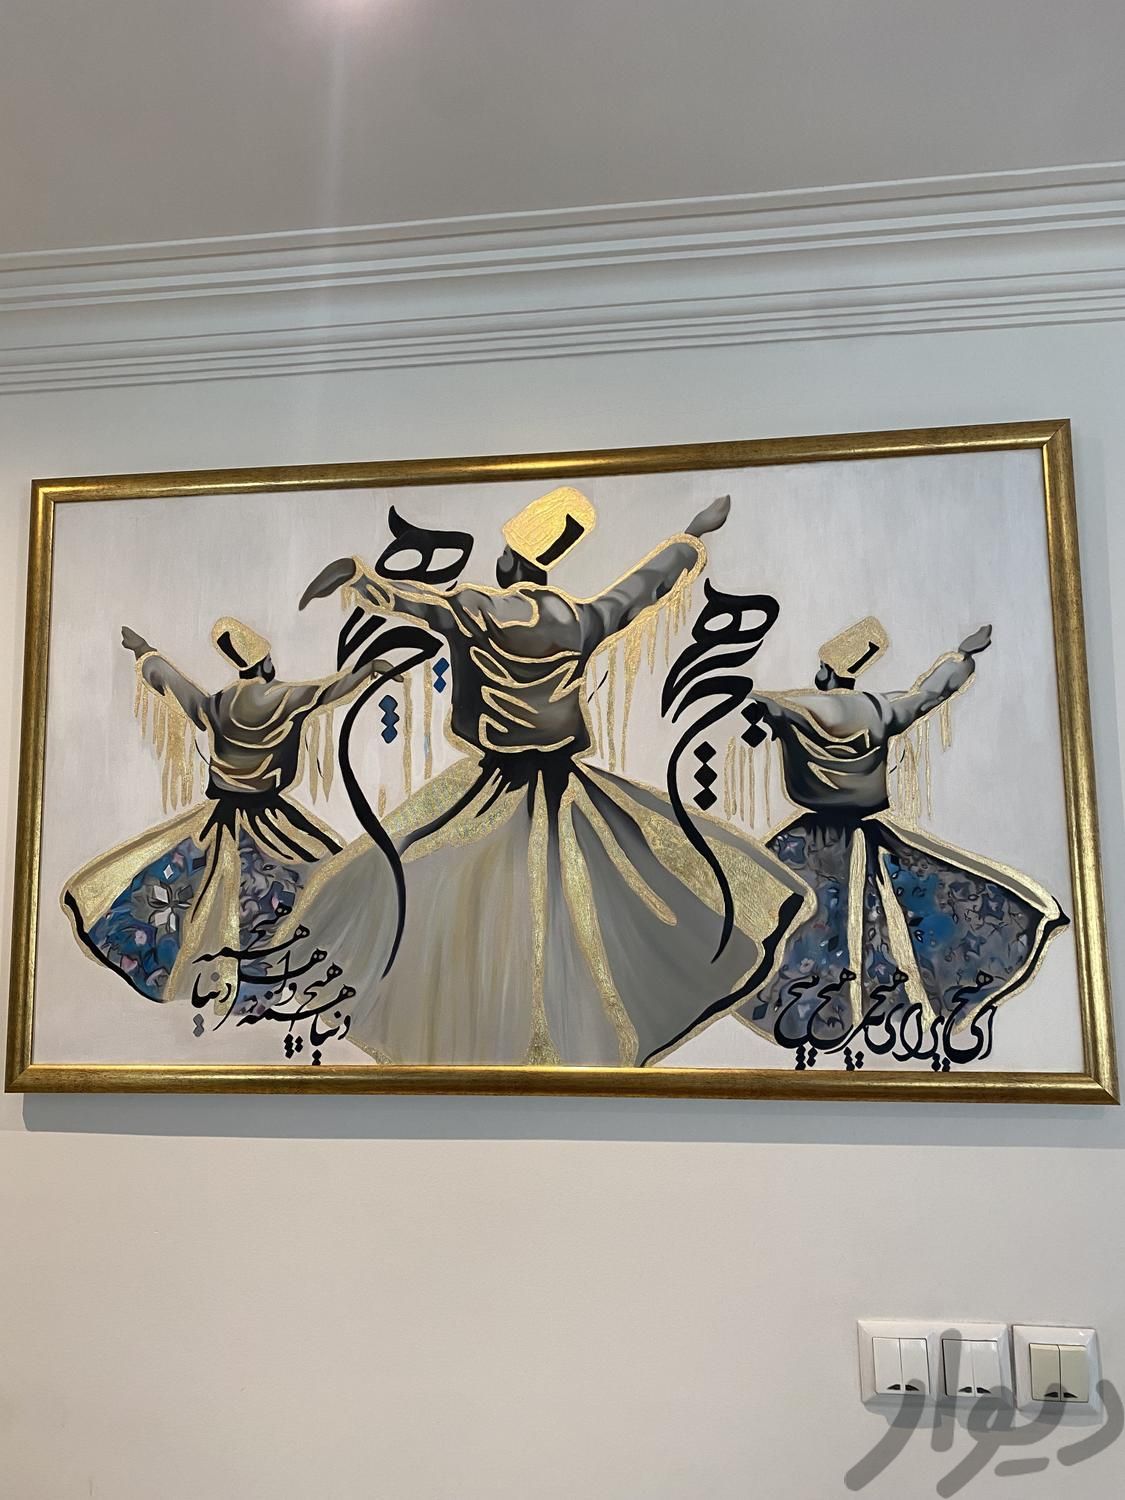 کامل کاردست کارشده با ورق طلا به همراه قاب طلایی|تابلو، نقاشی و عکس|تهران, سوهانک|دیوار